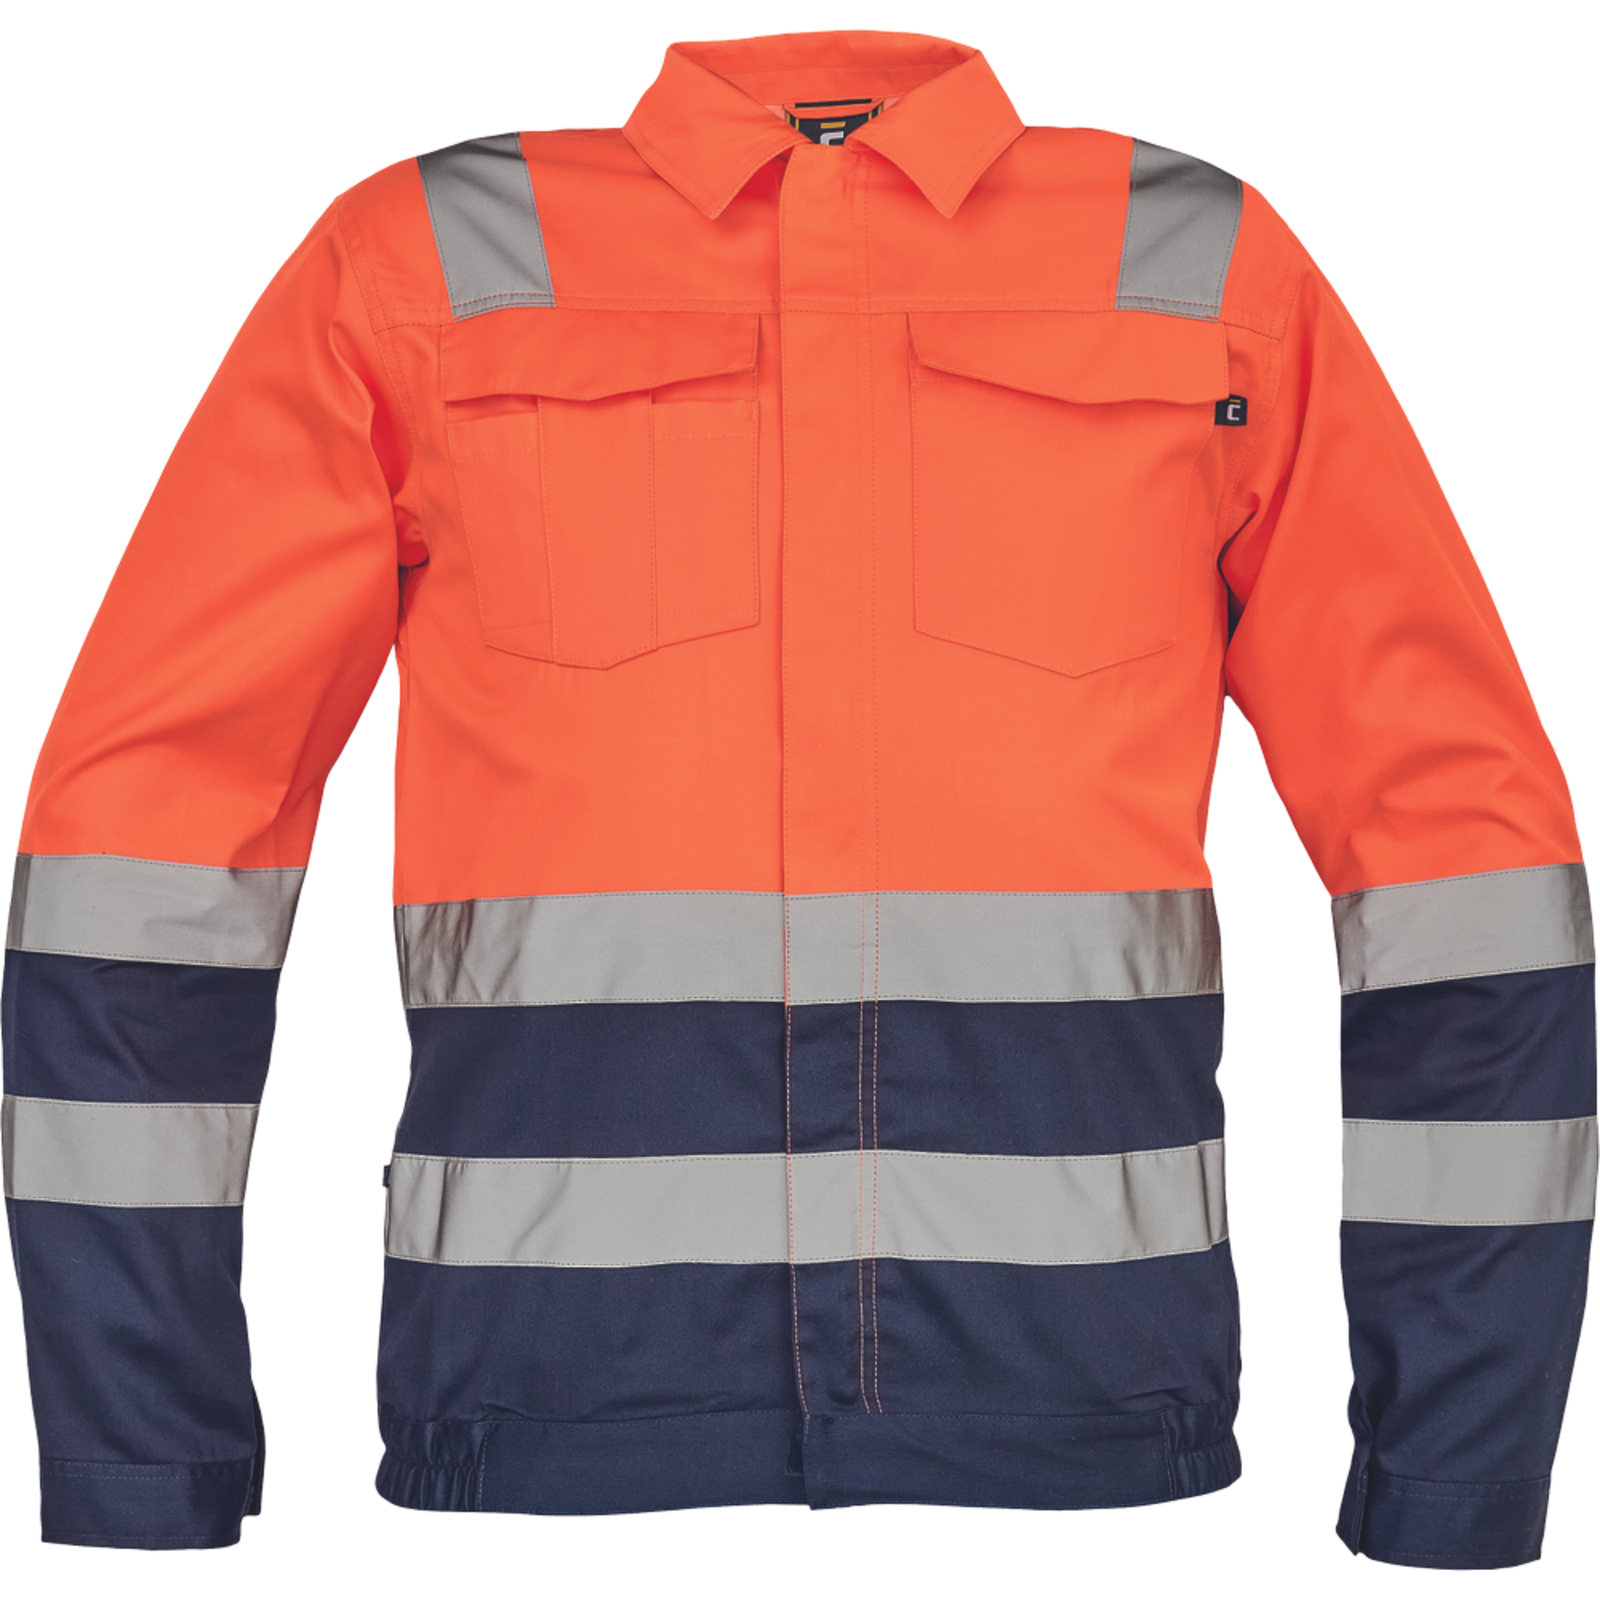 Reflexná pracovná bunda Cerva Valencia HV - veľkosť: 60, farba: oranžová/navy